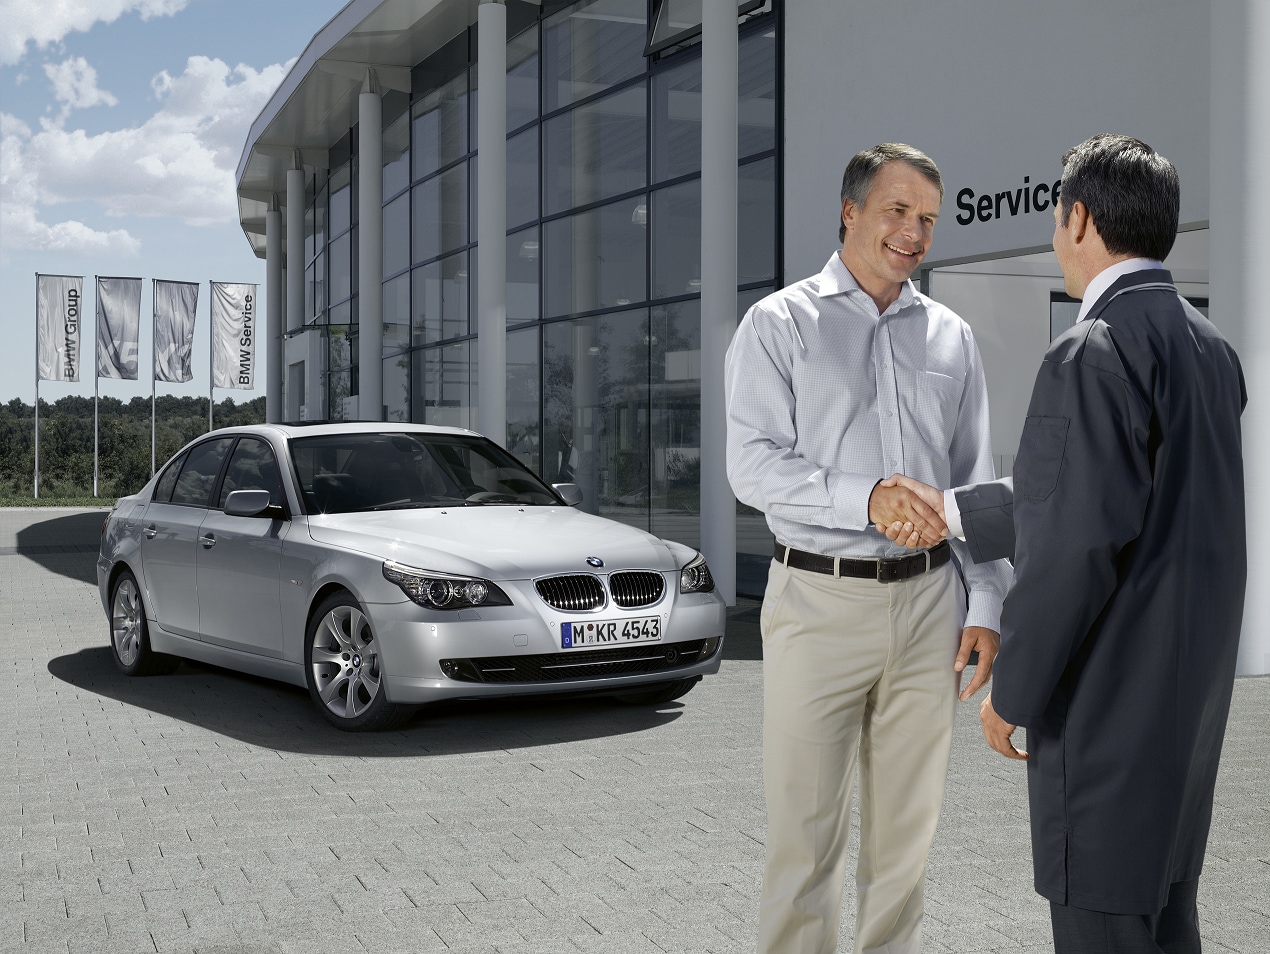 BMW Loaner Car Policy